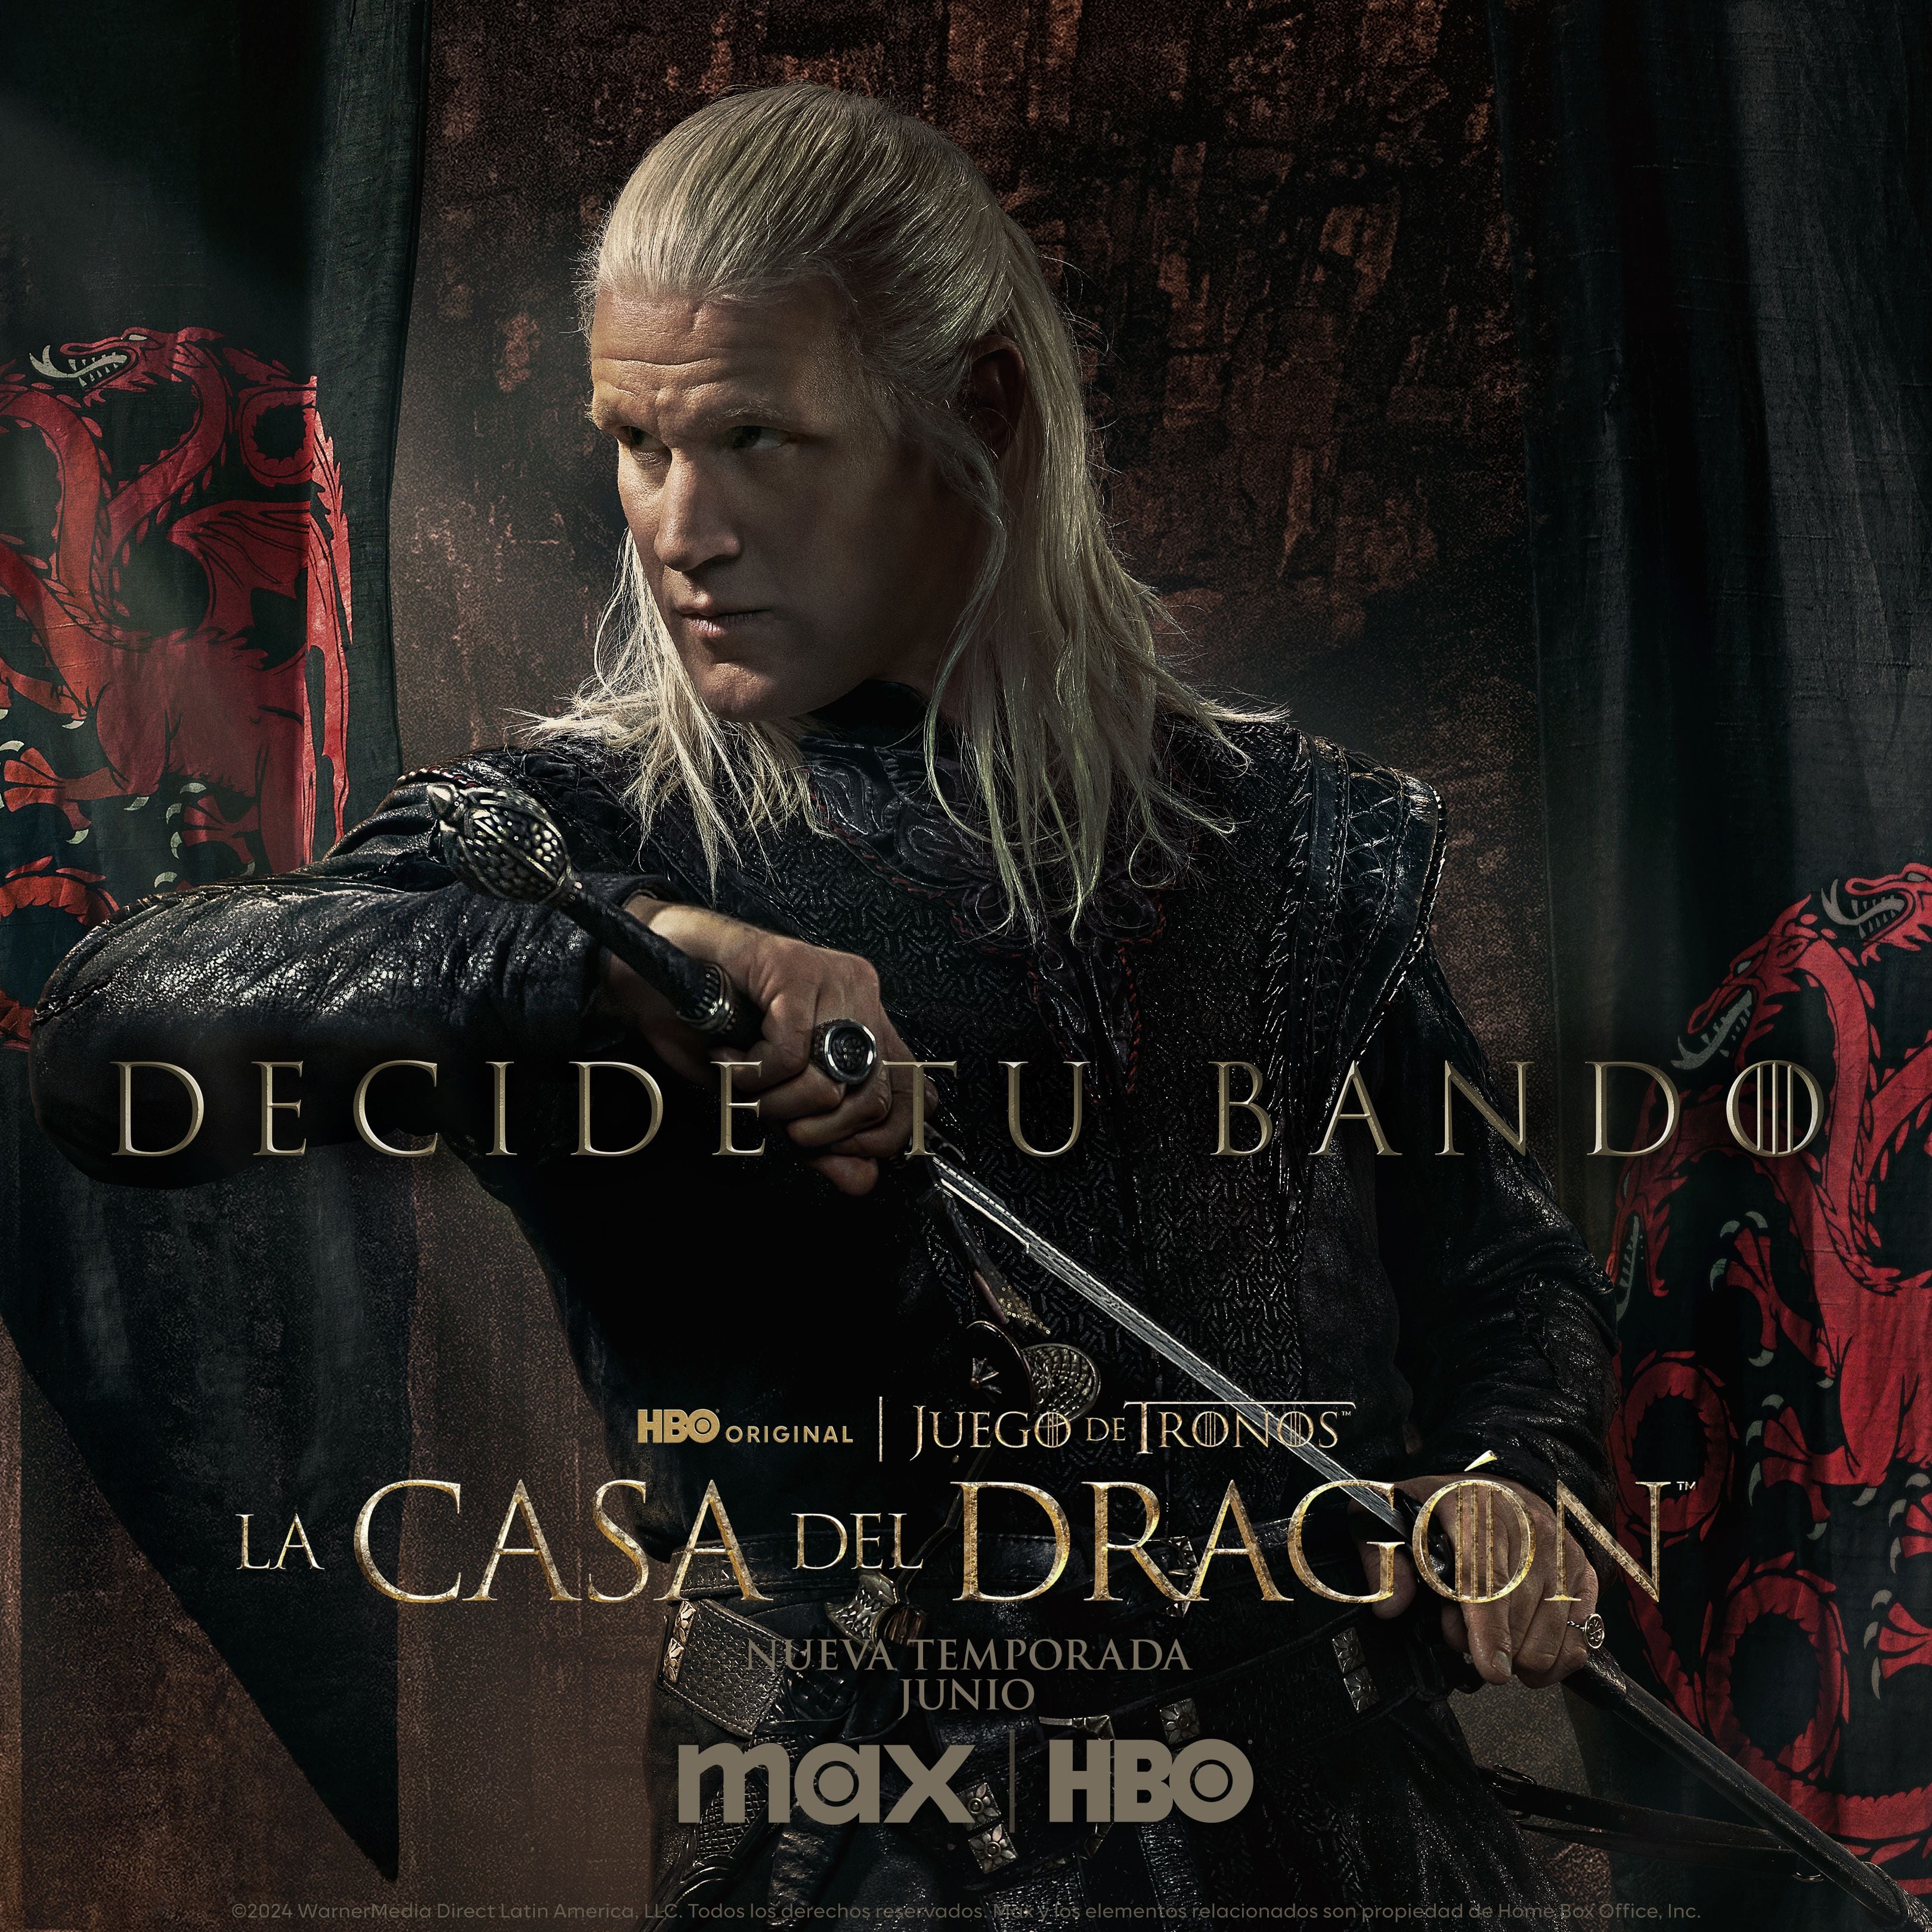 Daemon Targaryen es interpretado por Matt Smith en 'House of the Dragon'. Su papel es el de esposo y tío de Rhaenyra Targaryen.